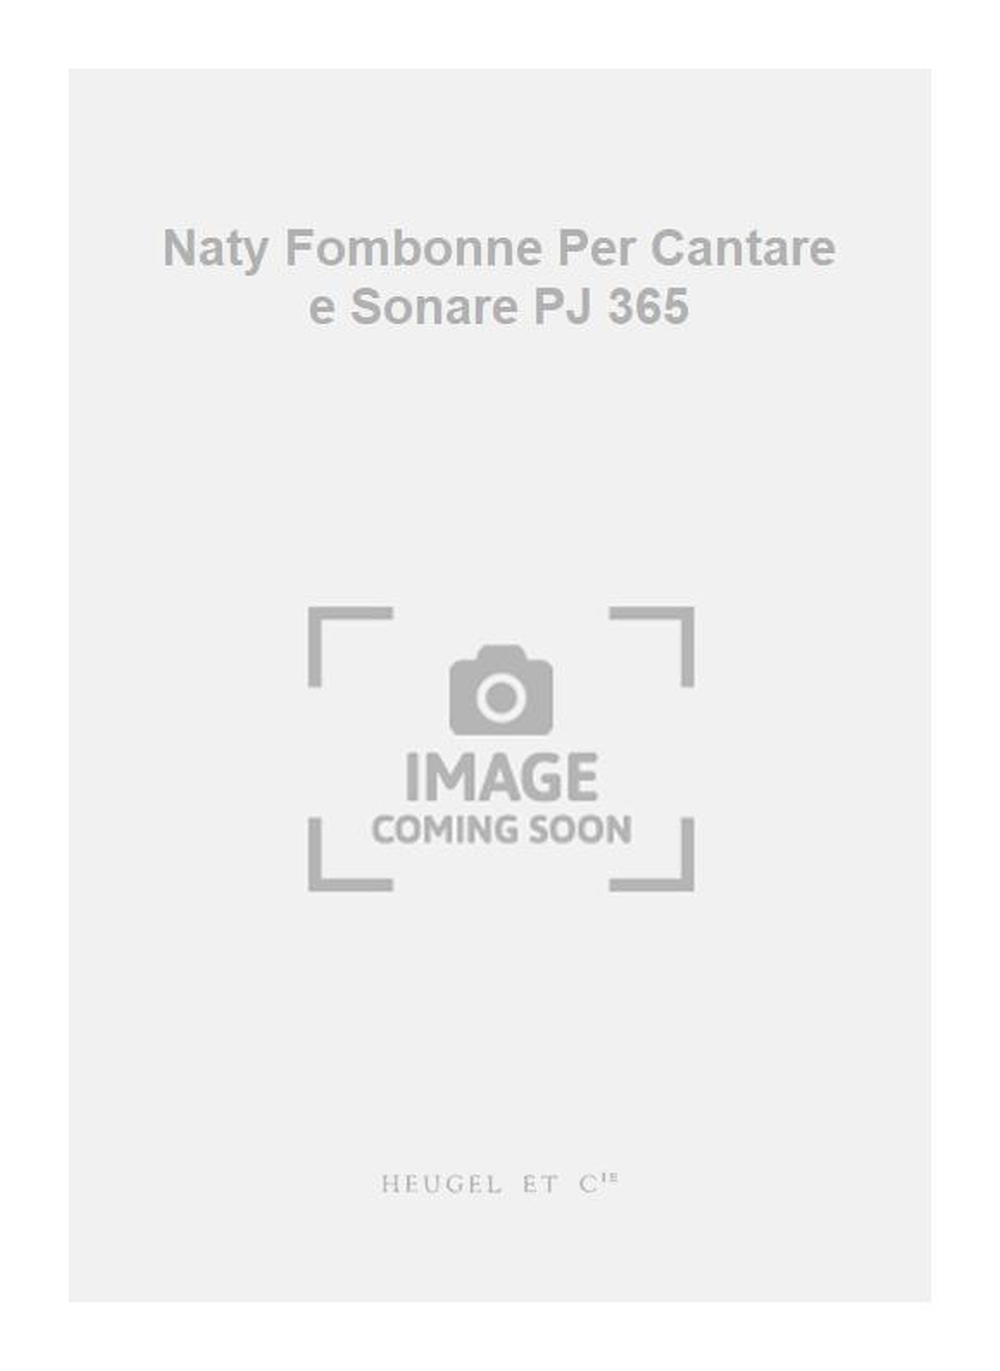 Jean Naty: Naty Fombonne Per Cantare e Sonare PJ 365